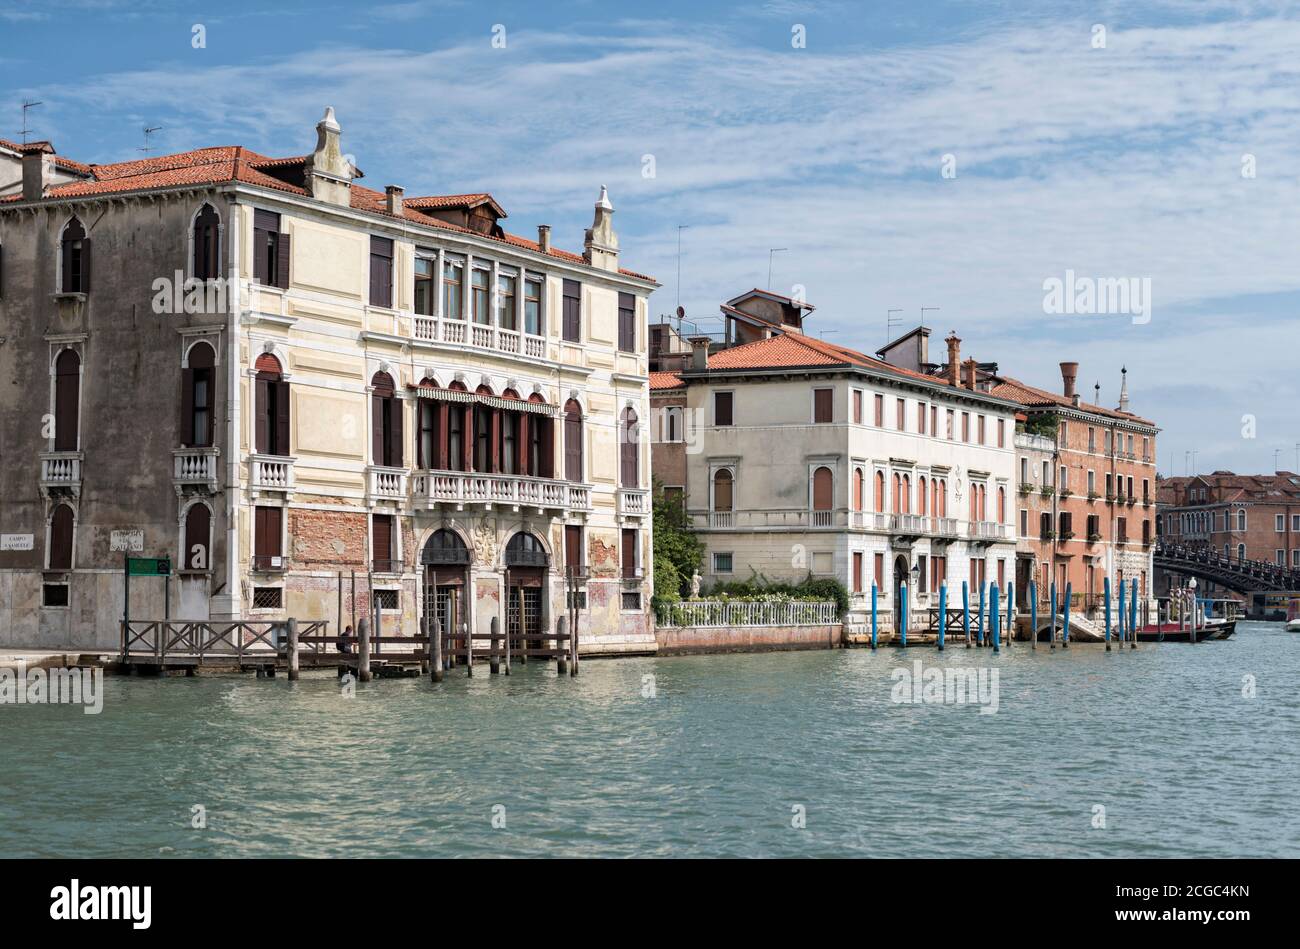 Las residencias vernáculas locales de Venecia a lo largo de un canal, Italia. Foto de stock